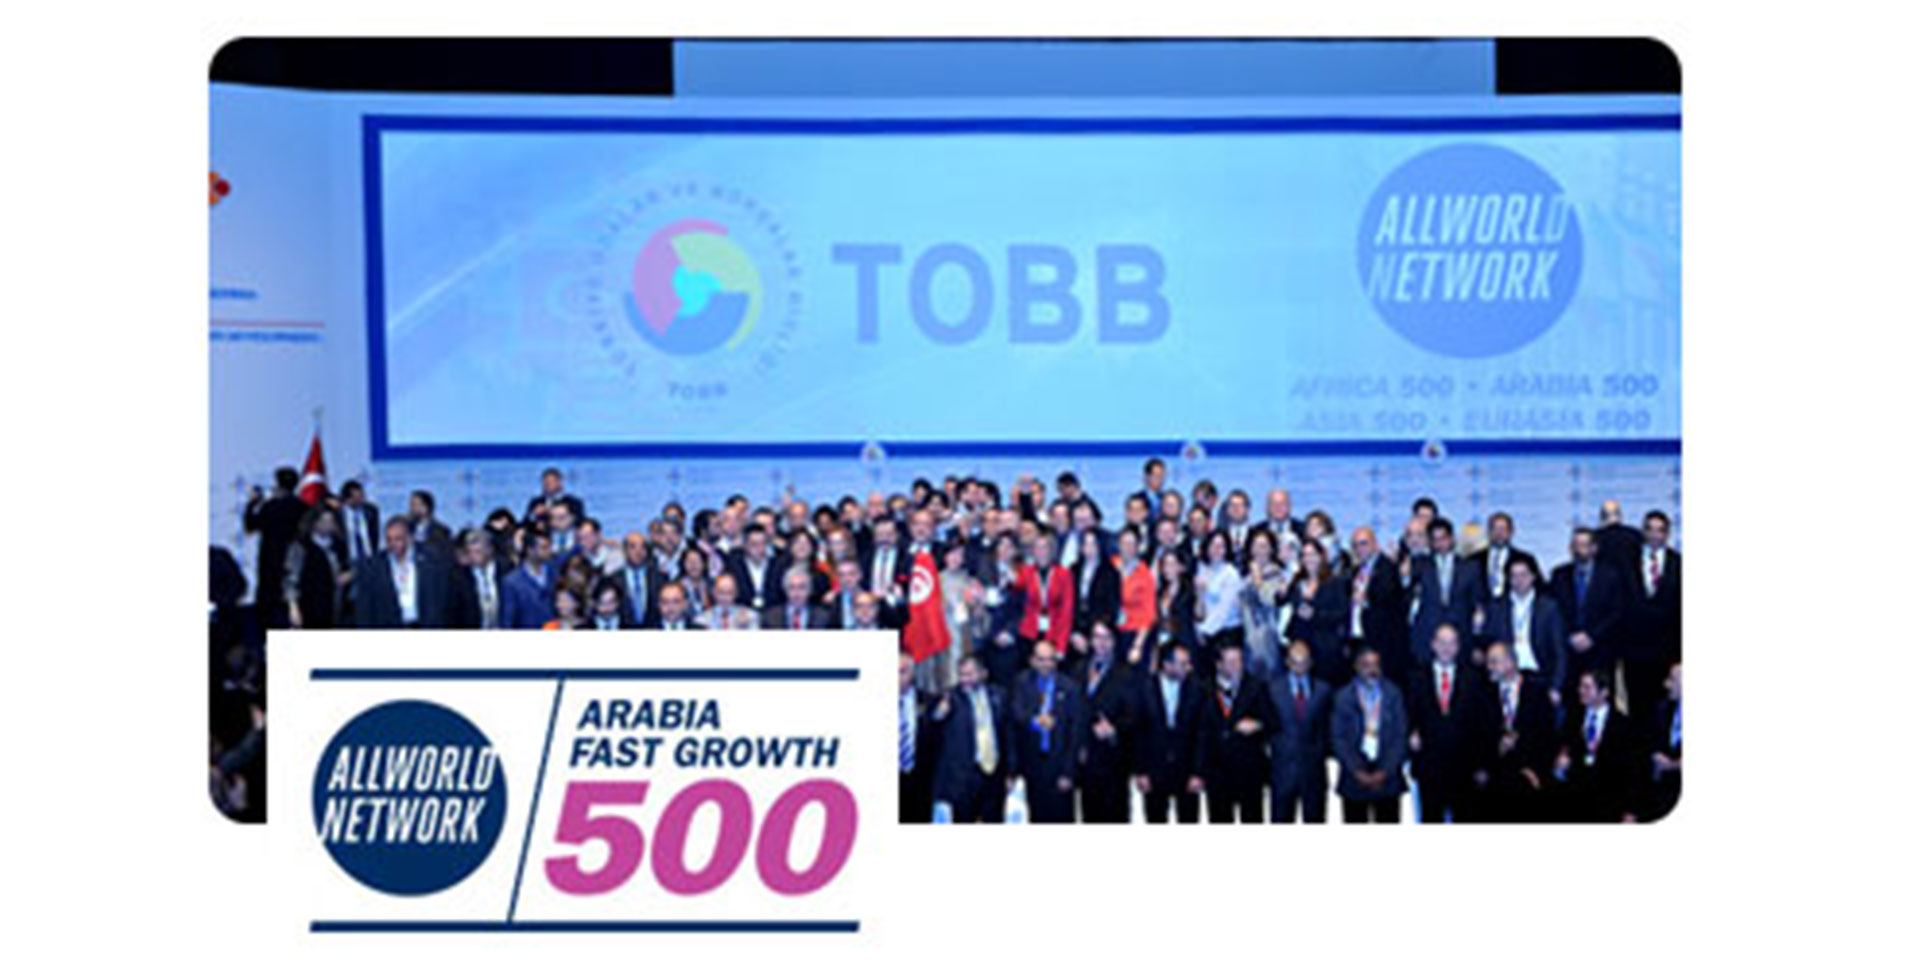 Insgesamt 500 Unternehmen aus 82 Ländern nahmen an der Konkurrenz von 500 am schnellsten wachsenden Unternehmen DUBAI Network